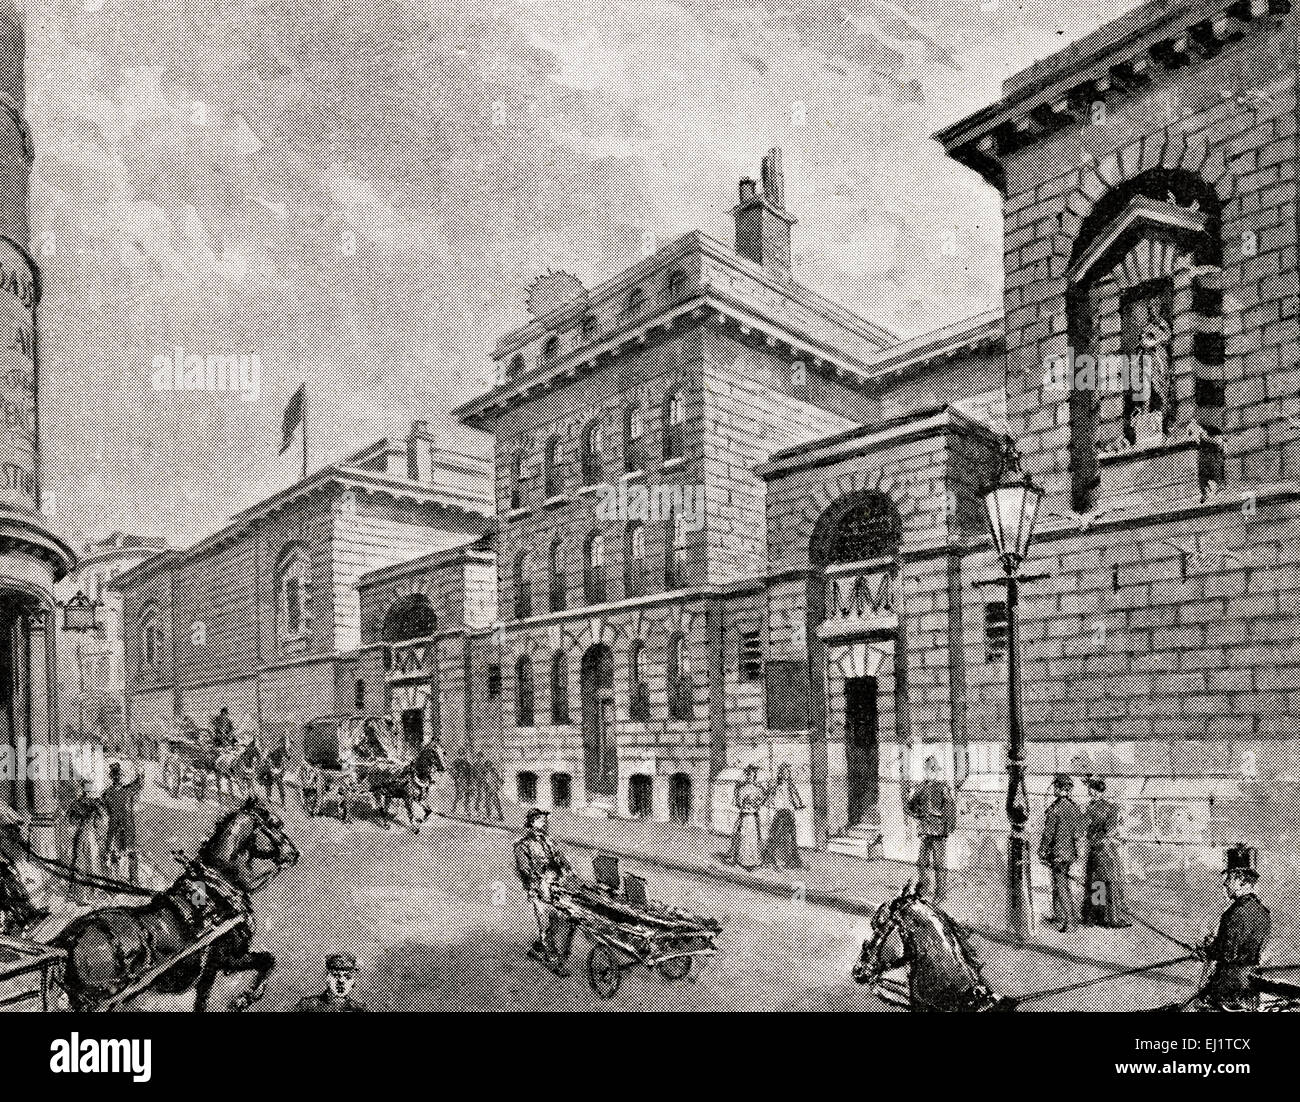 Grabado de escena en la calle fuera de la prisión Newgate en época victoriana magazine fecha 1898 Foto de stock